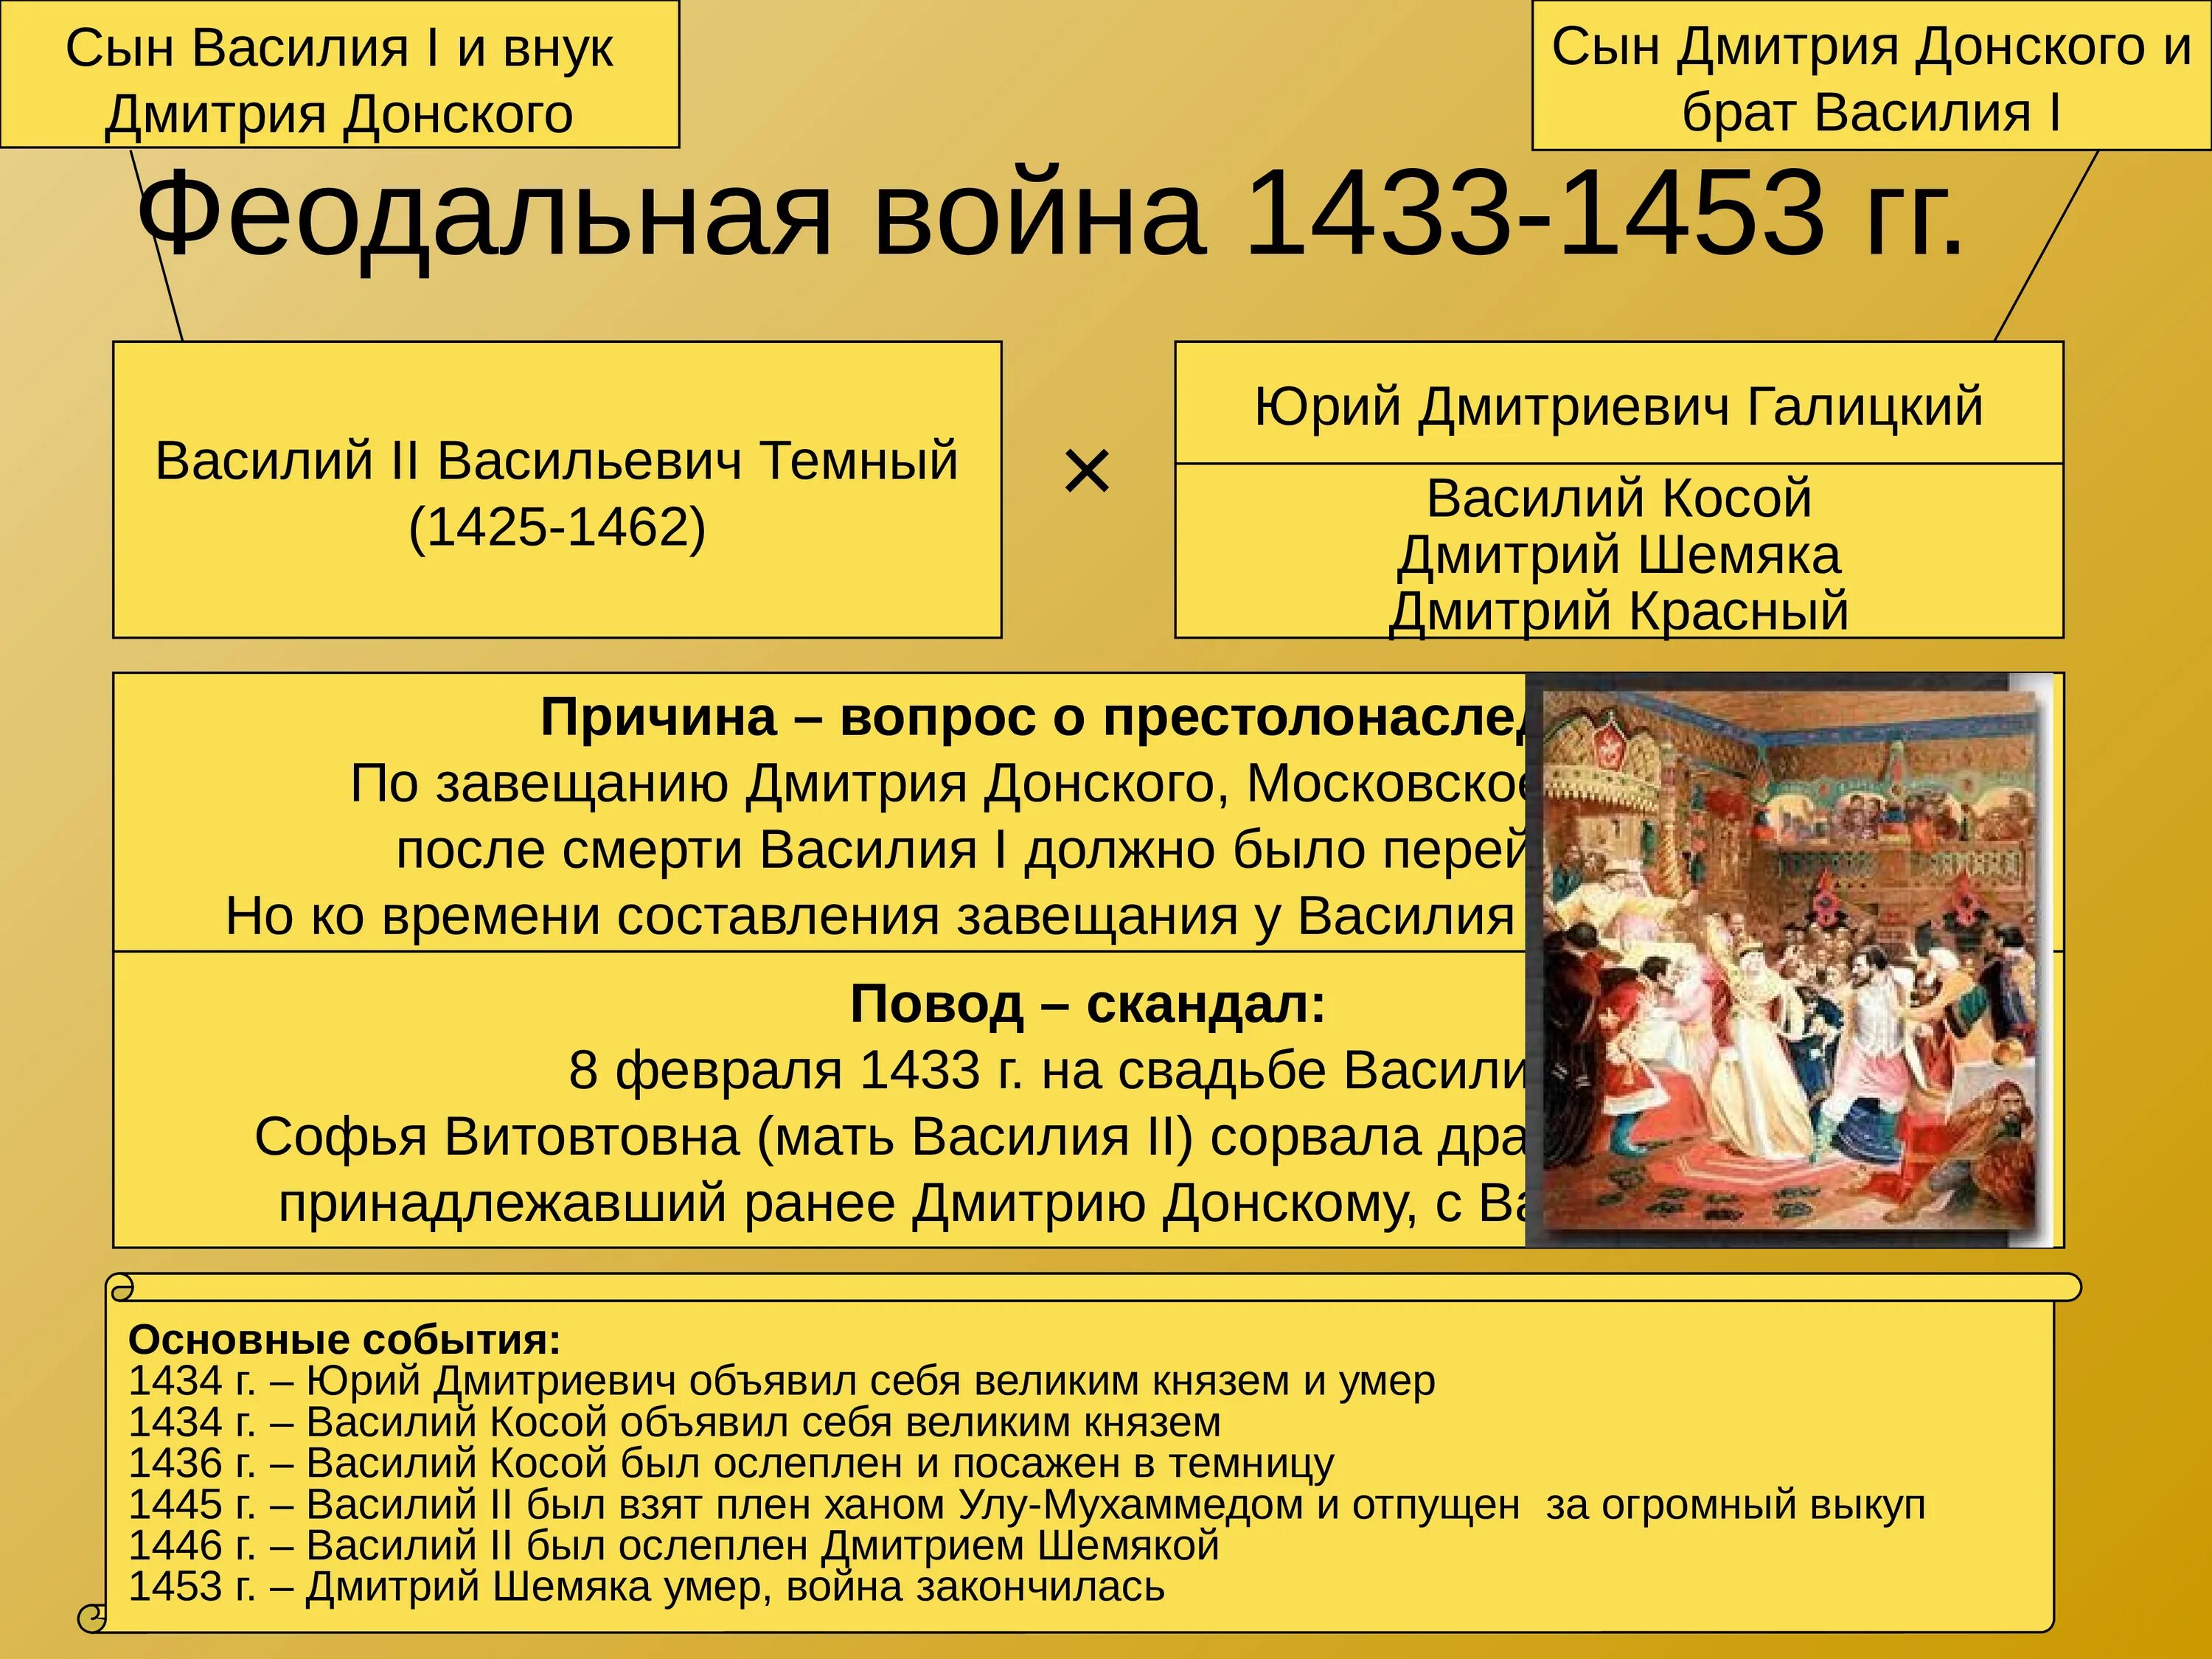 14 век события истории